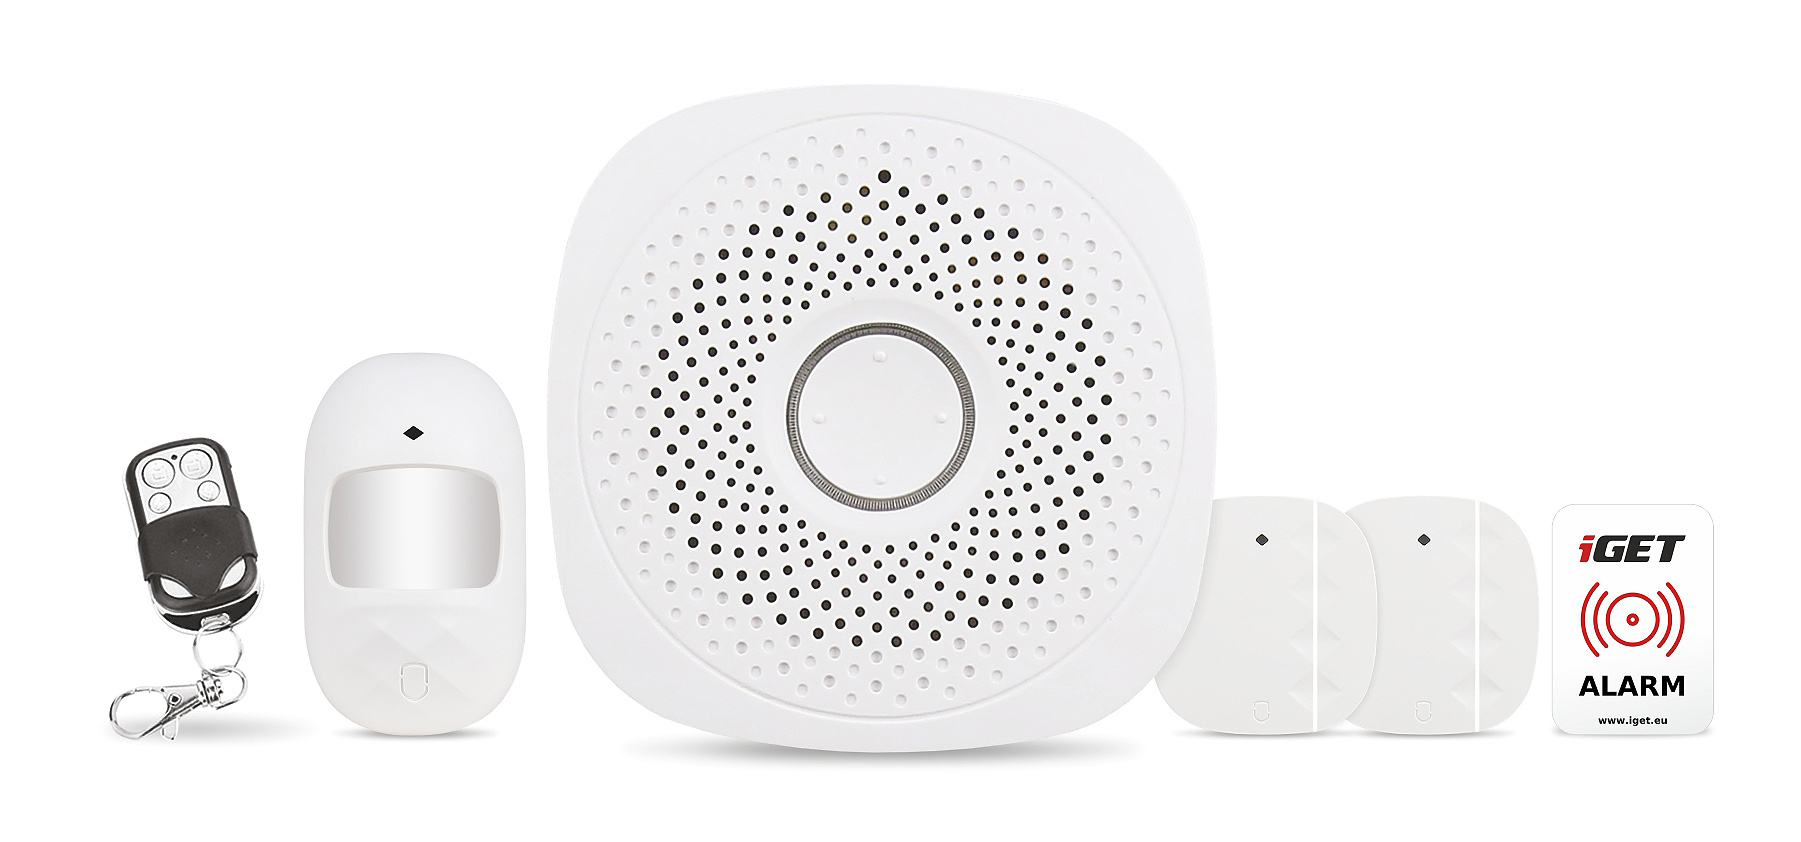 Obrázek iGET HOME X1 - Inteligentní Wi-Fi alarm, v aplikaci i ovládání IP kamer a zásuvek, Android, iOS